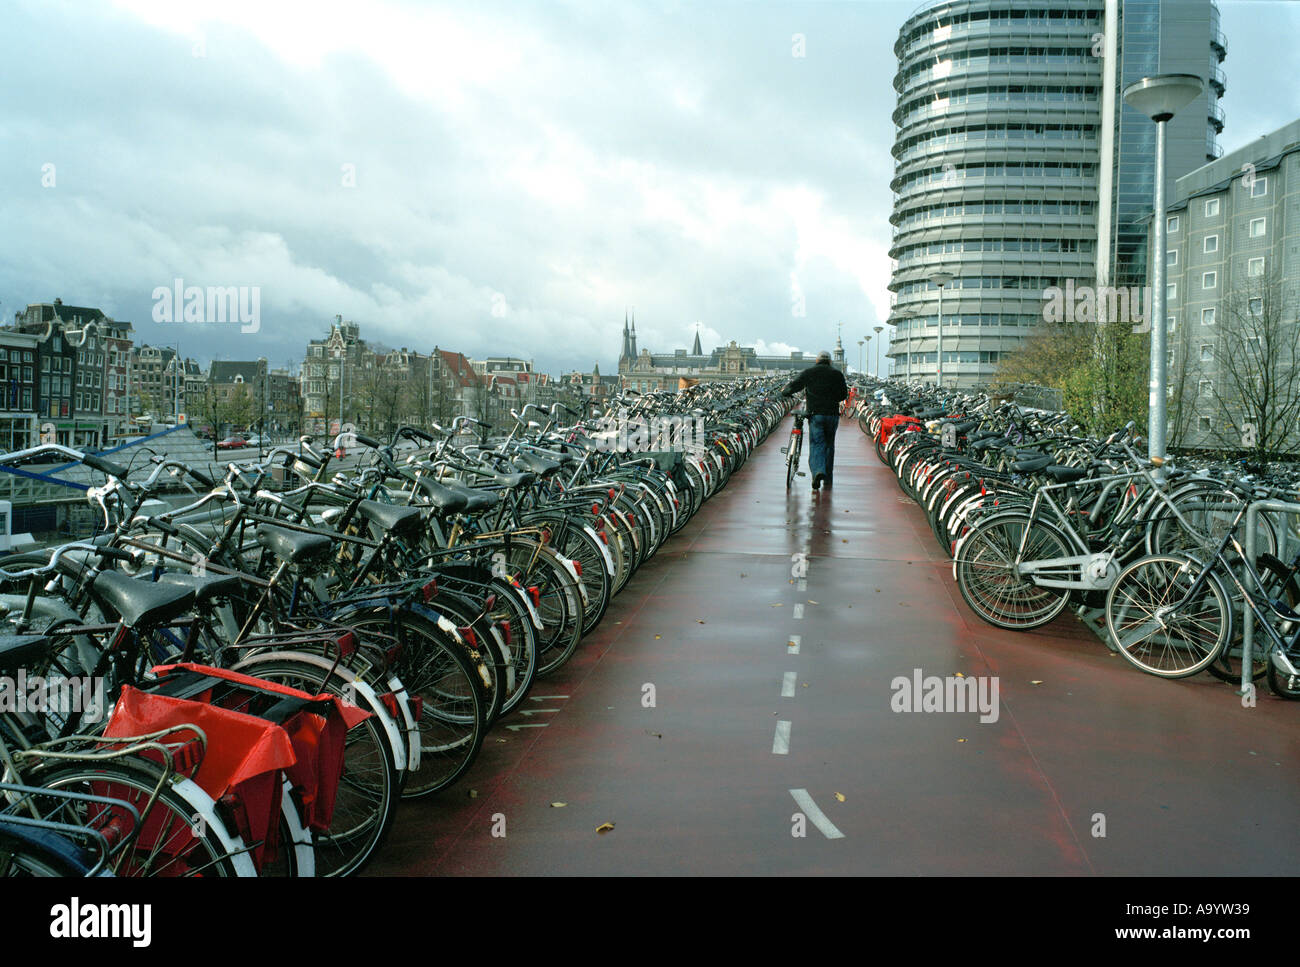 Varios pisos de estacionamiento de bicicletas en Amsterdam Foto de stock